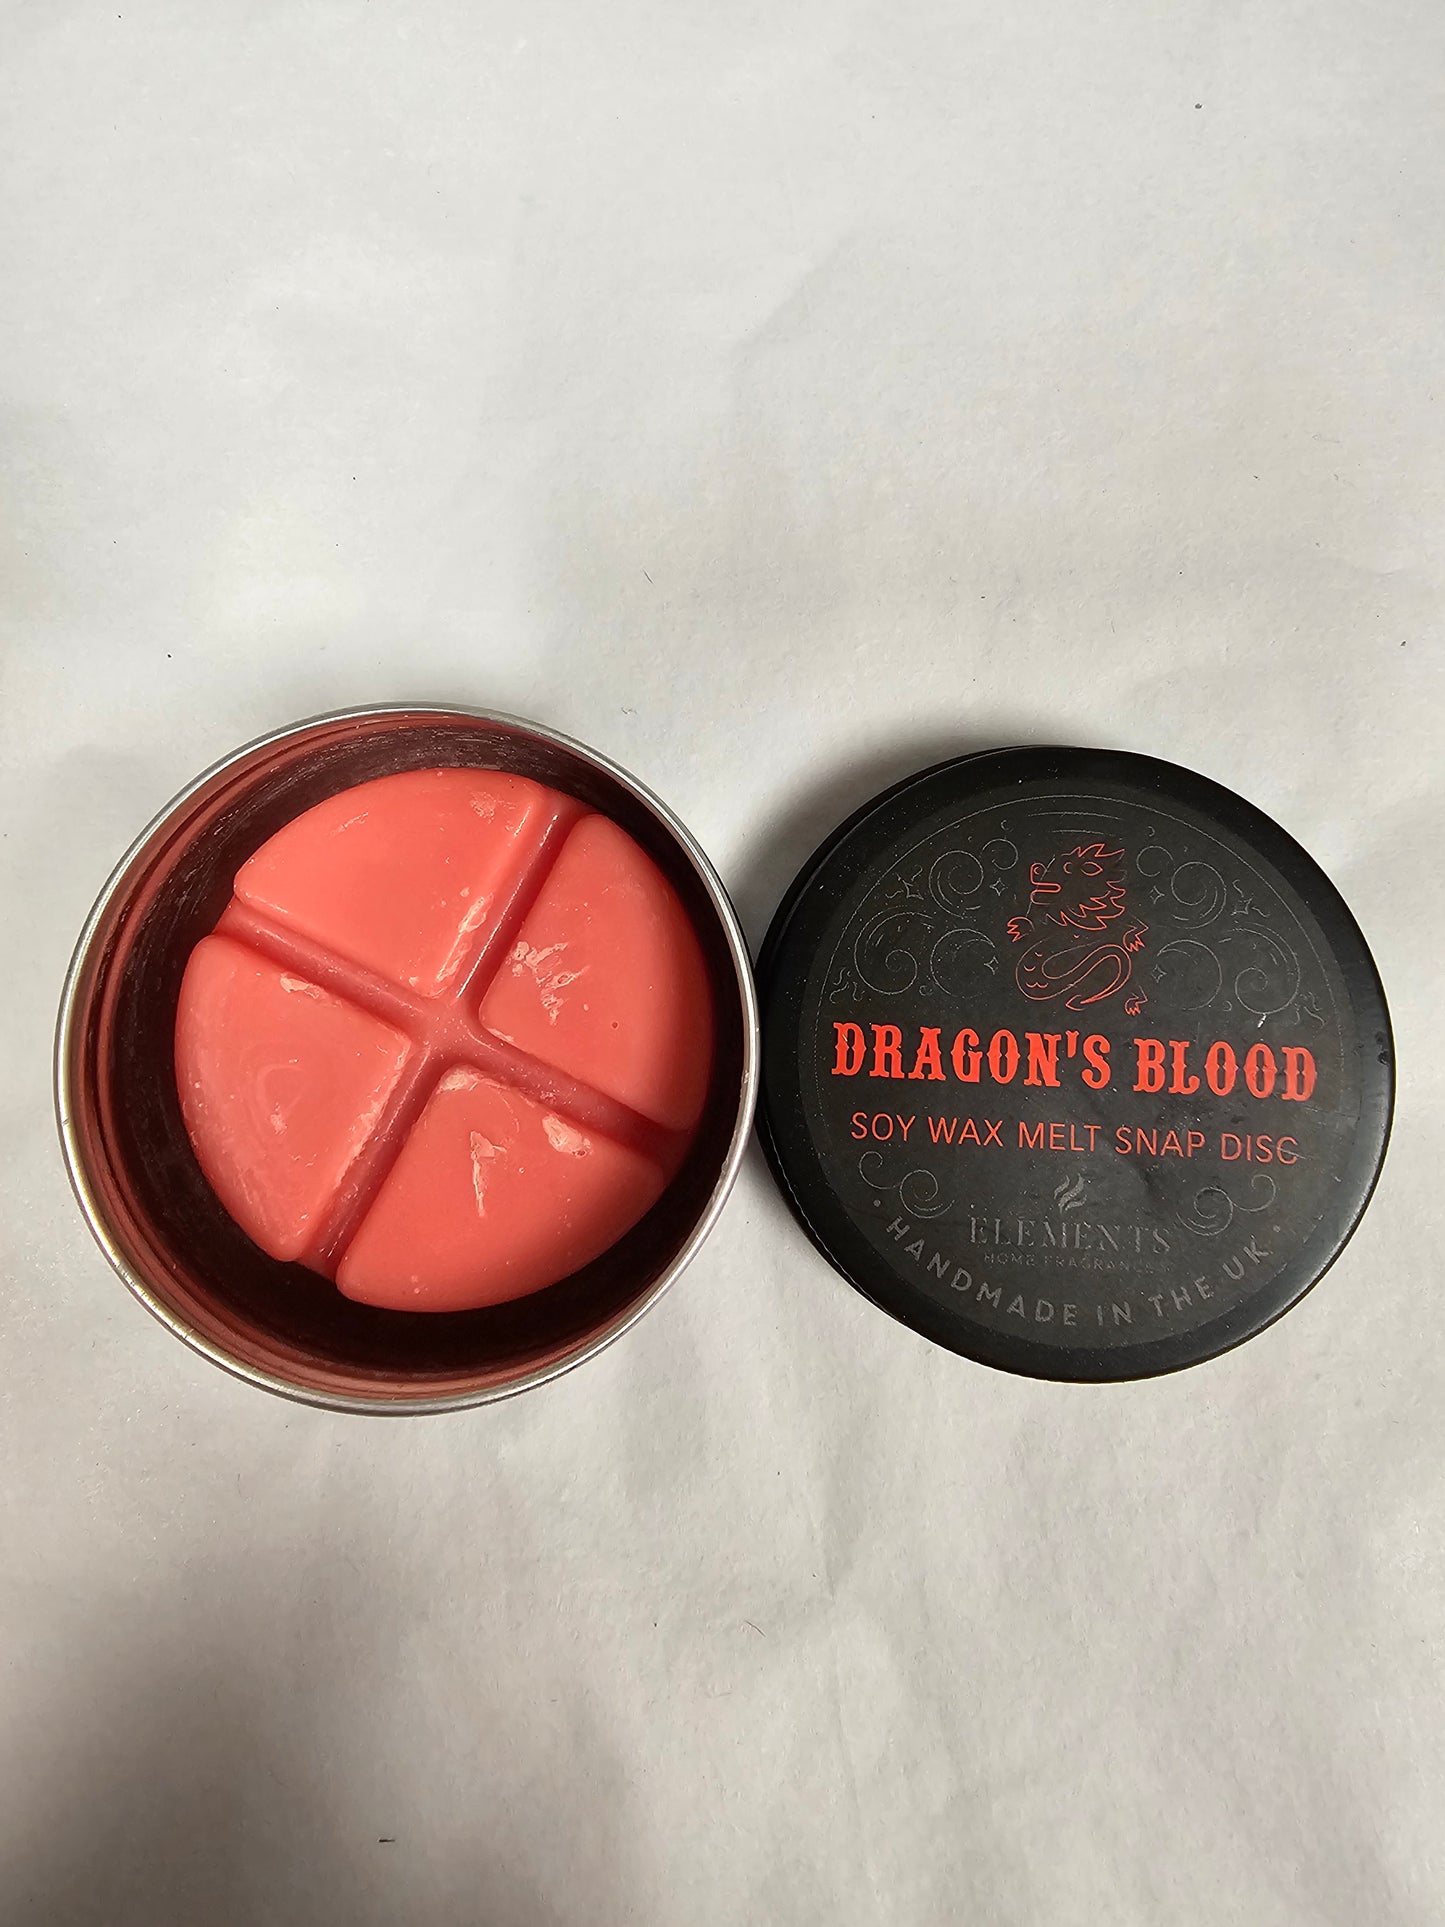 Soy Wax Melt Snap Disc (Dragon's Blood)